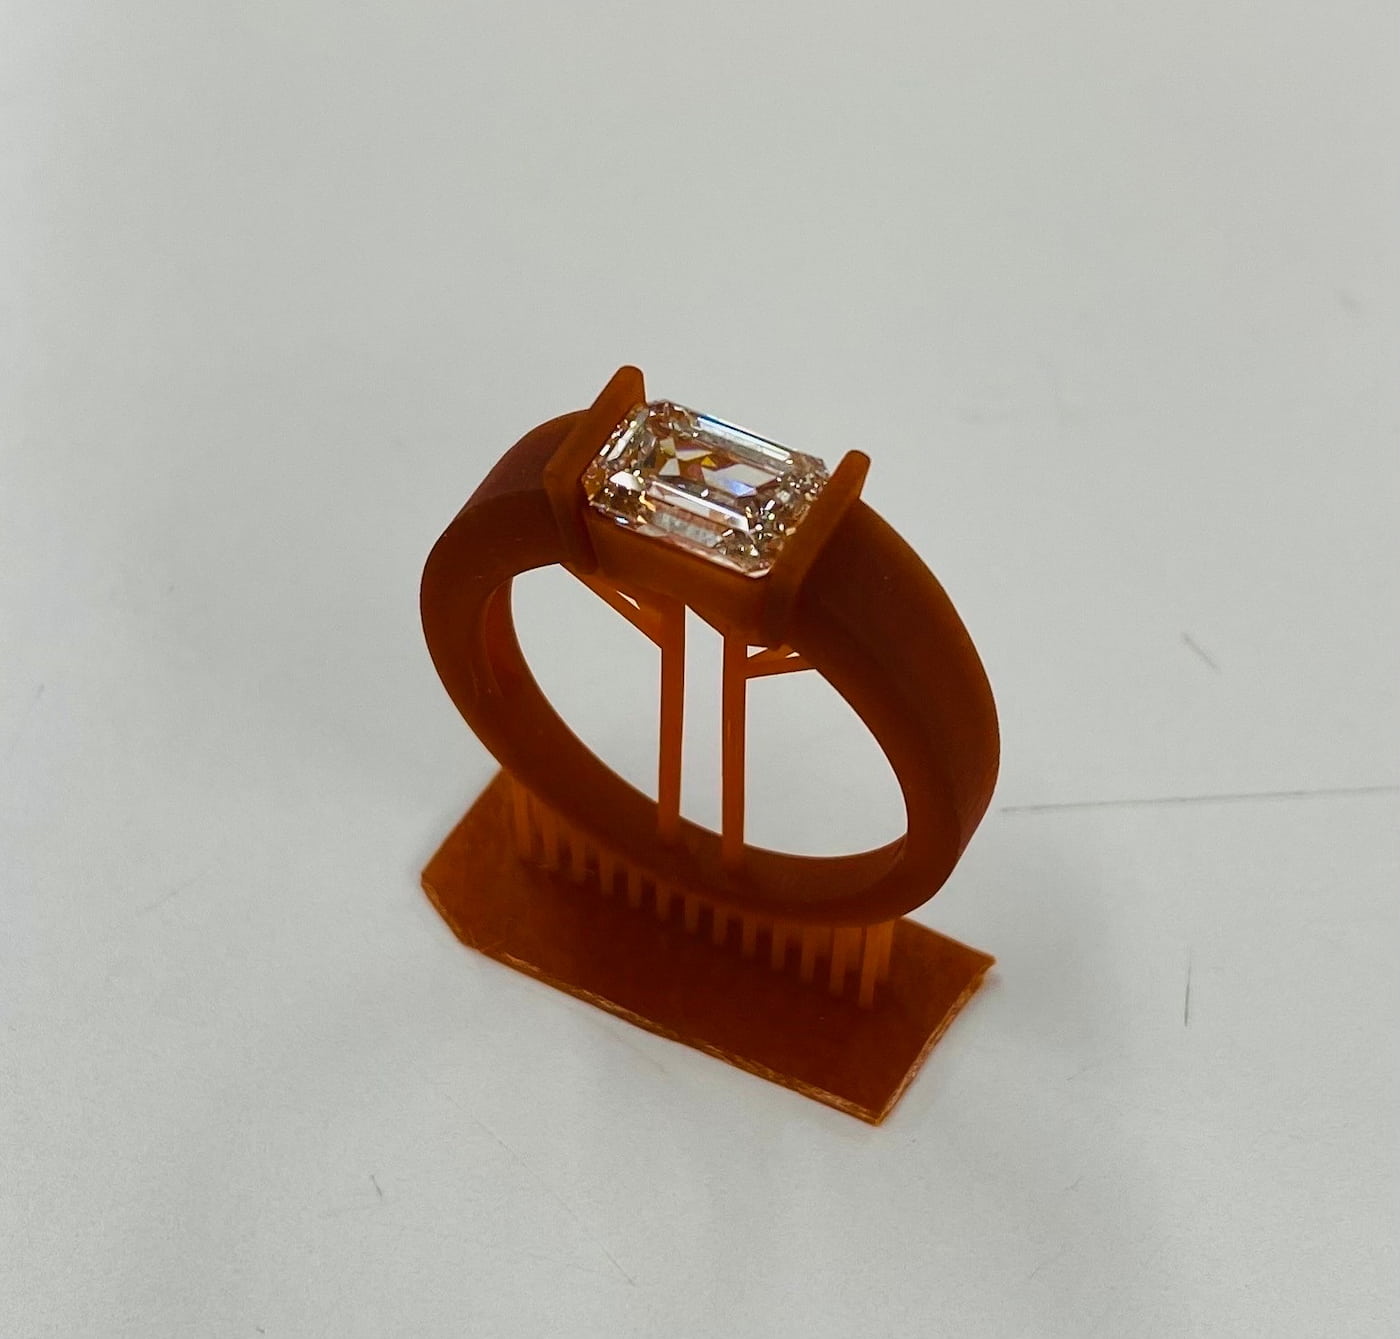 ラボグロウンダイヤモンド専門店『september5』のオーダーメイド・セミオーダーメイドの際の工程、樹脂（ゴム製）で原型を製作した写真。